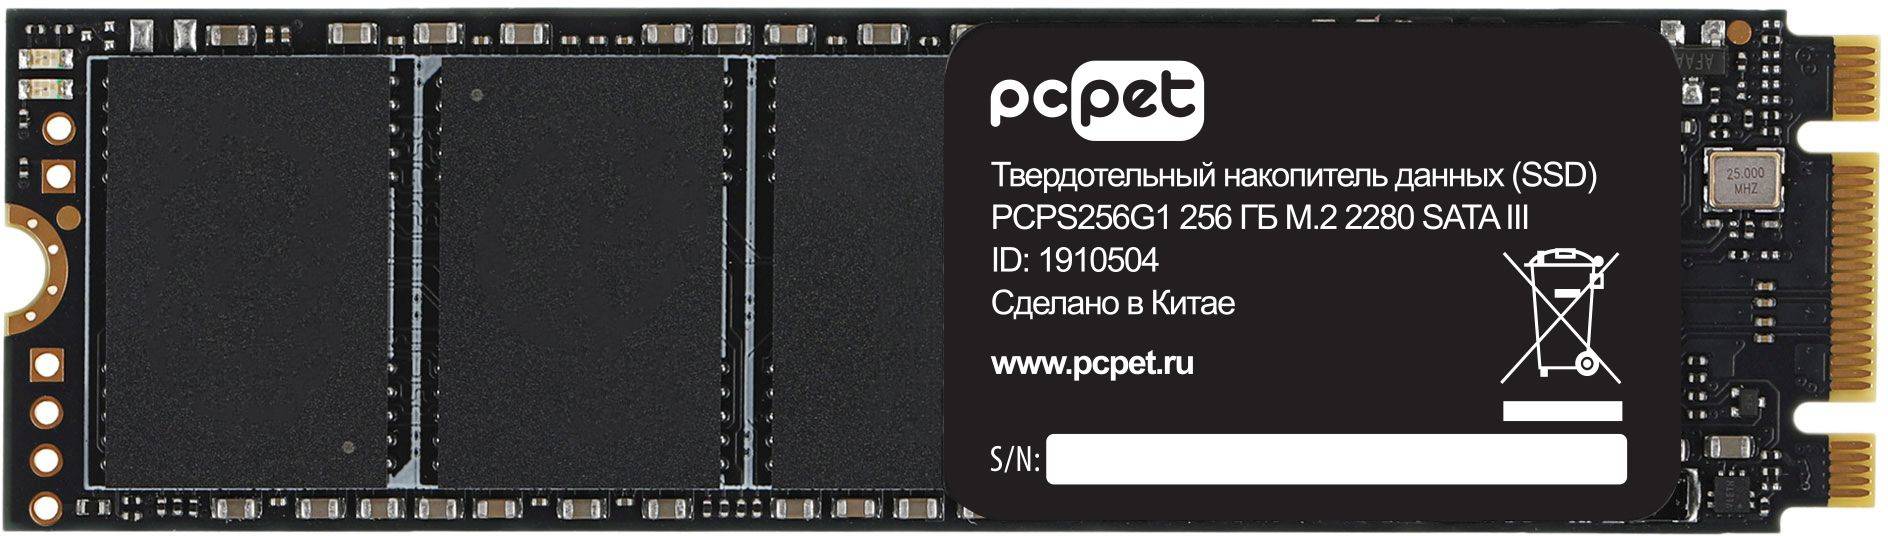 Твердотельный накопитель PC Pet 256ГБ, M.2 2280, SATA III, M.2 PCPS256G1